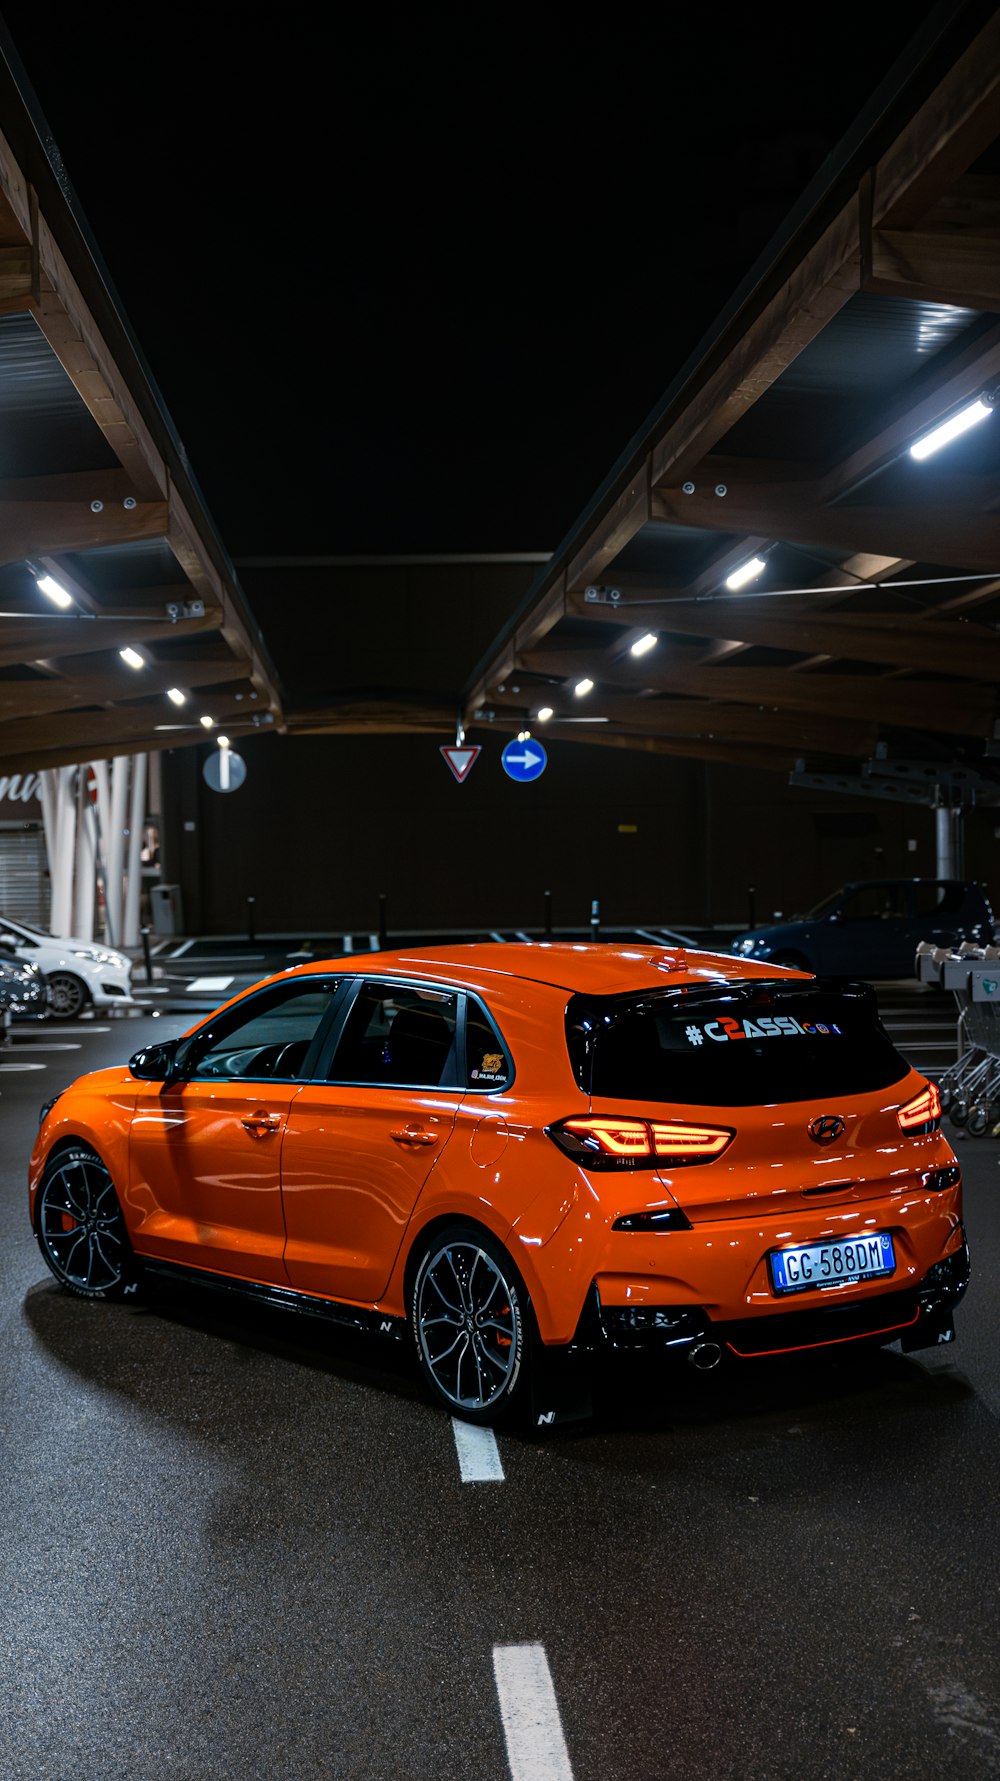 an orange car parked in a parking garage